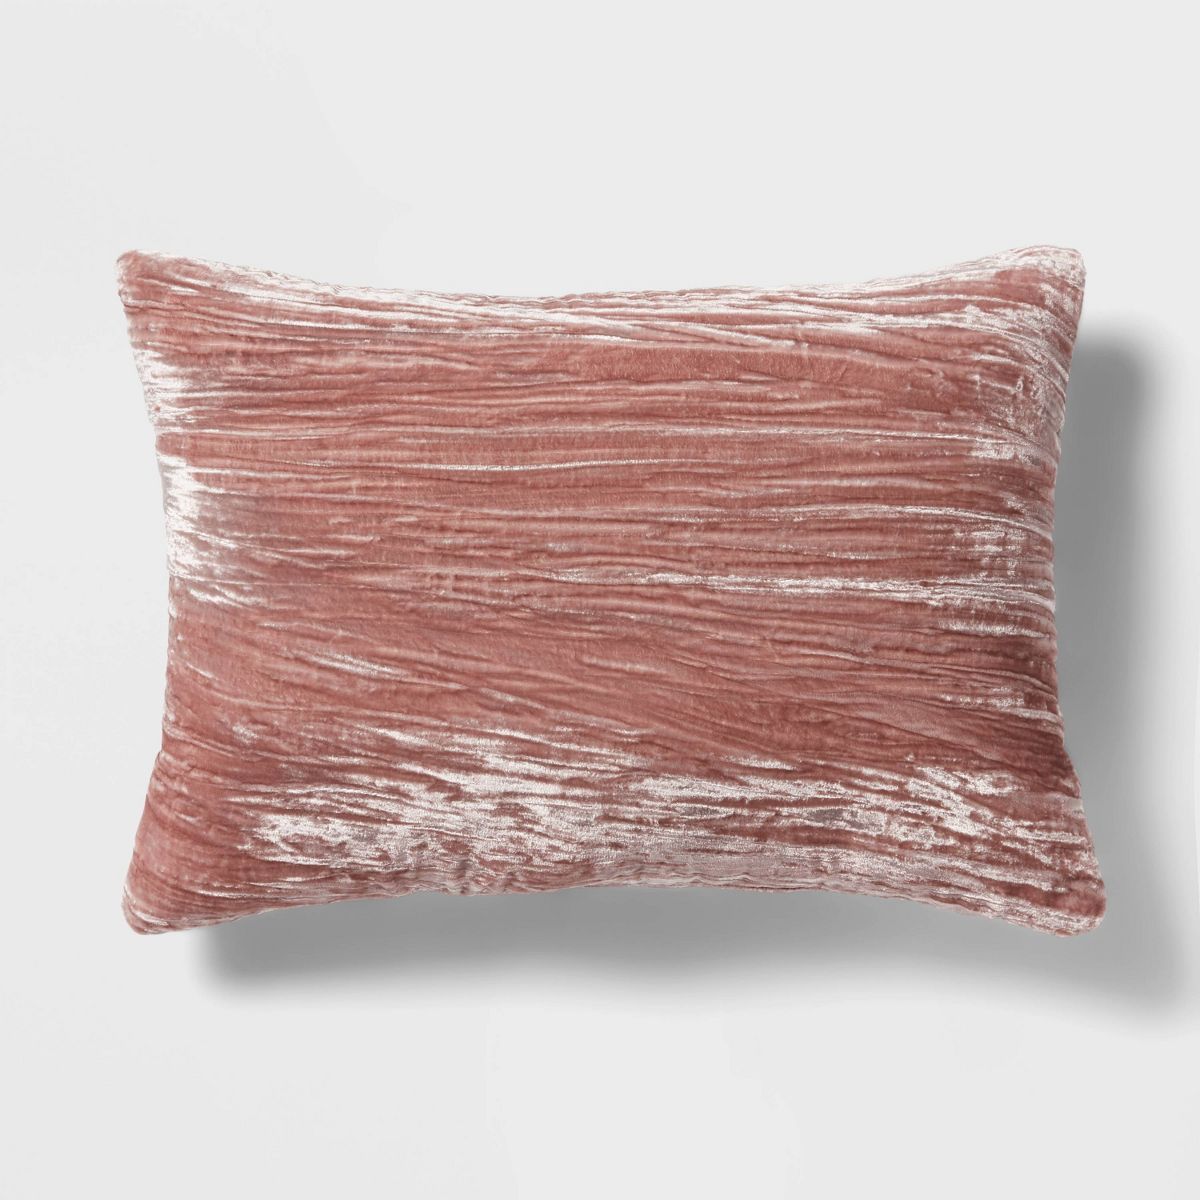 14"x20" Luxe Velvet Oblong Decorative Pillow Mauve - Threshold™ | Target